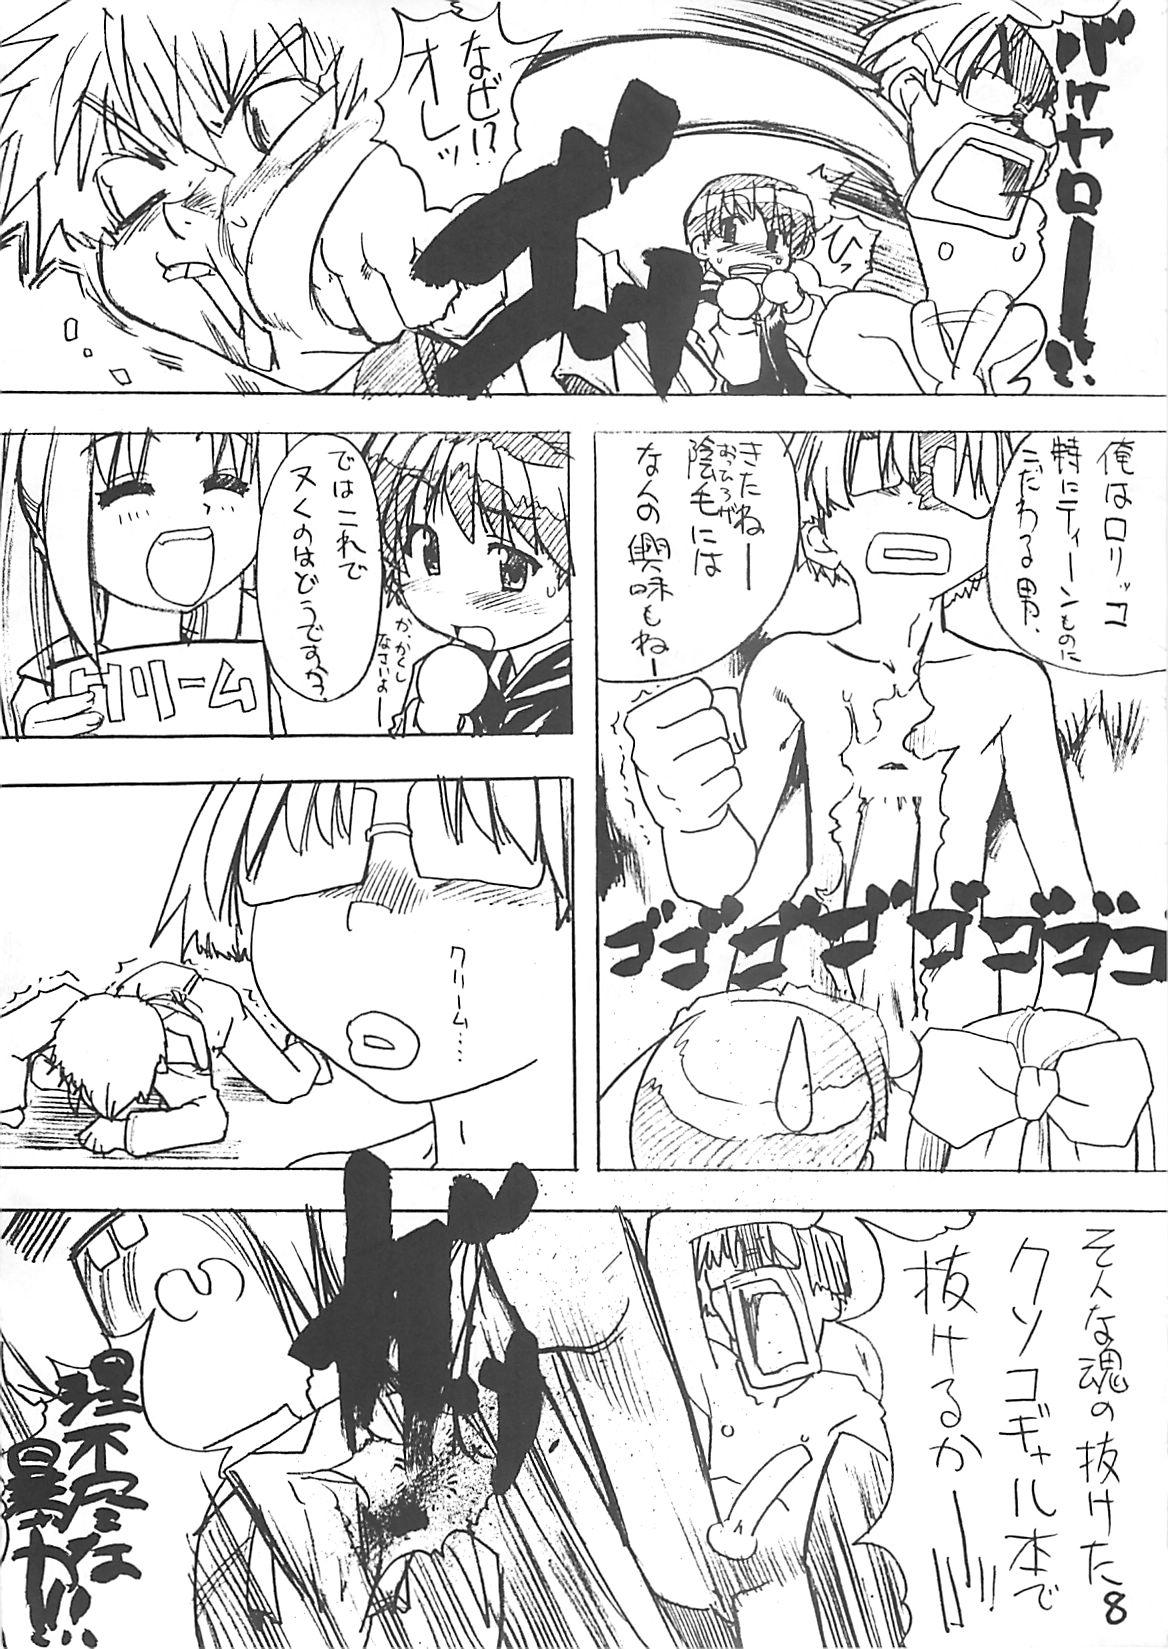 Blows Takehara Style - Gakkou no kaidan Mediumtits - Page 7